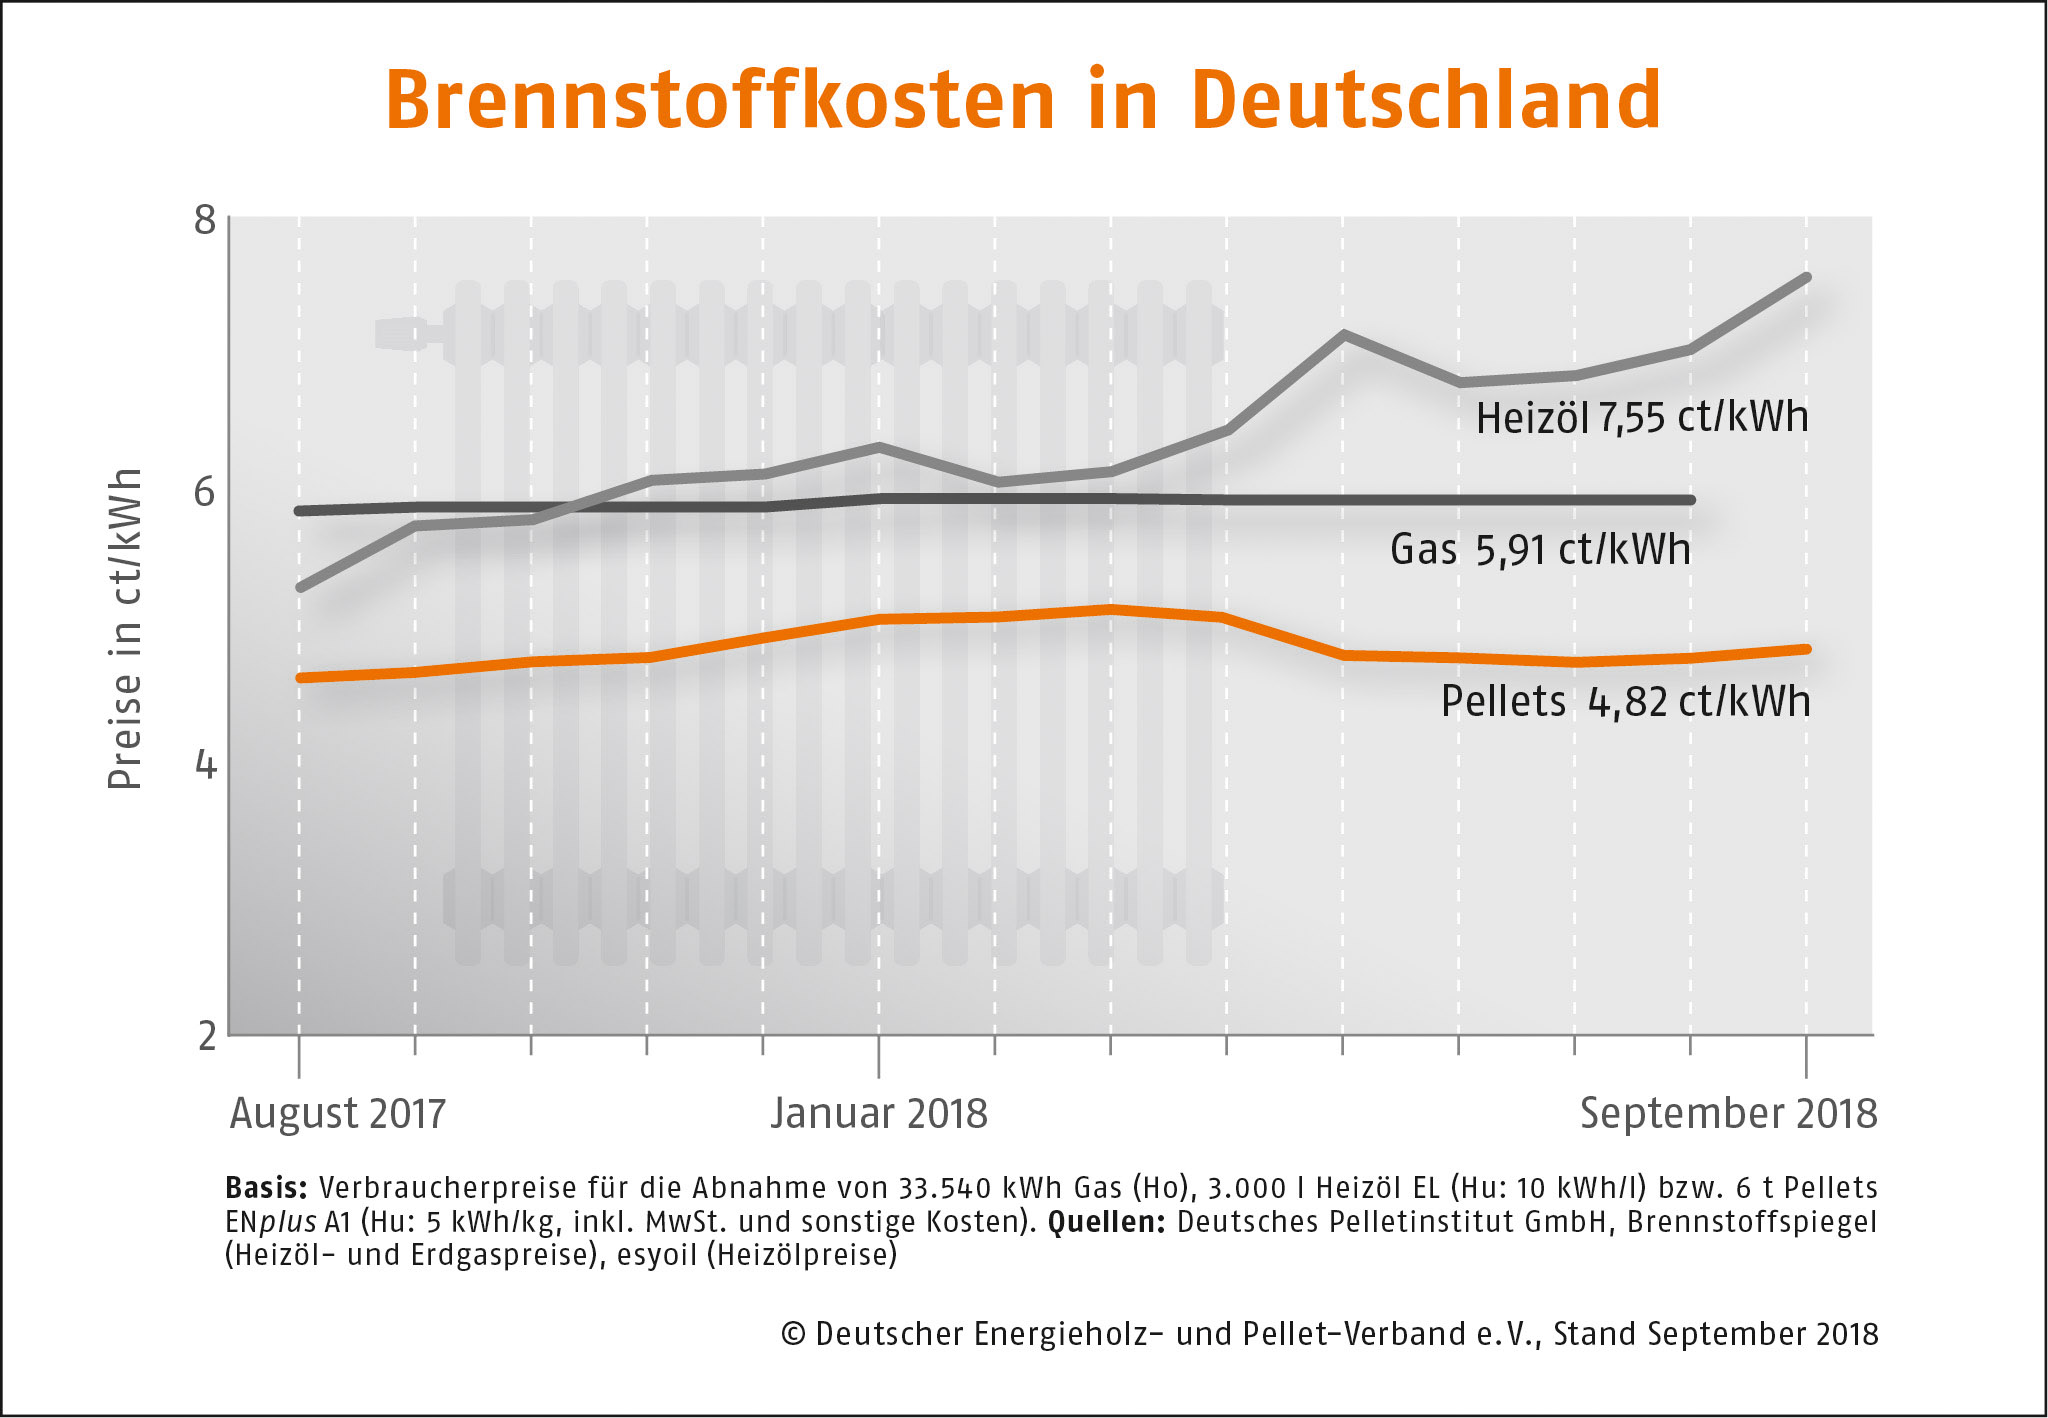 Brennstoffkosten in Deutschland 09/2018